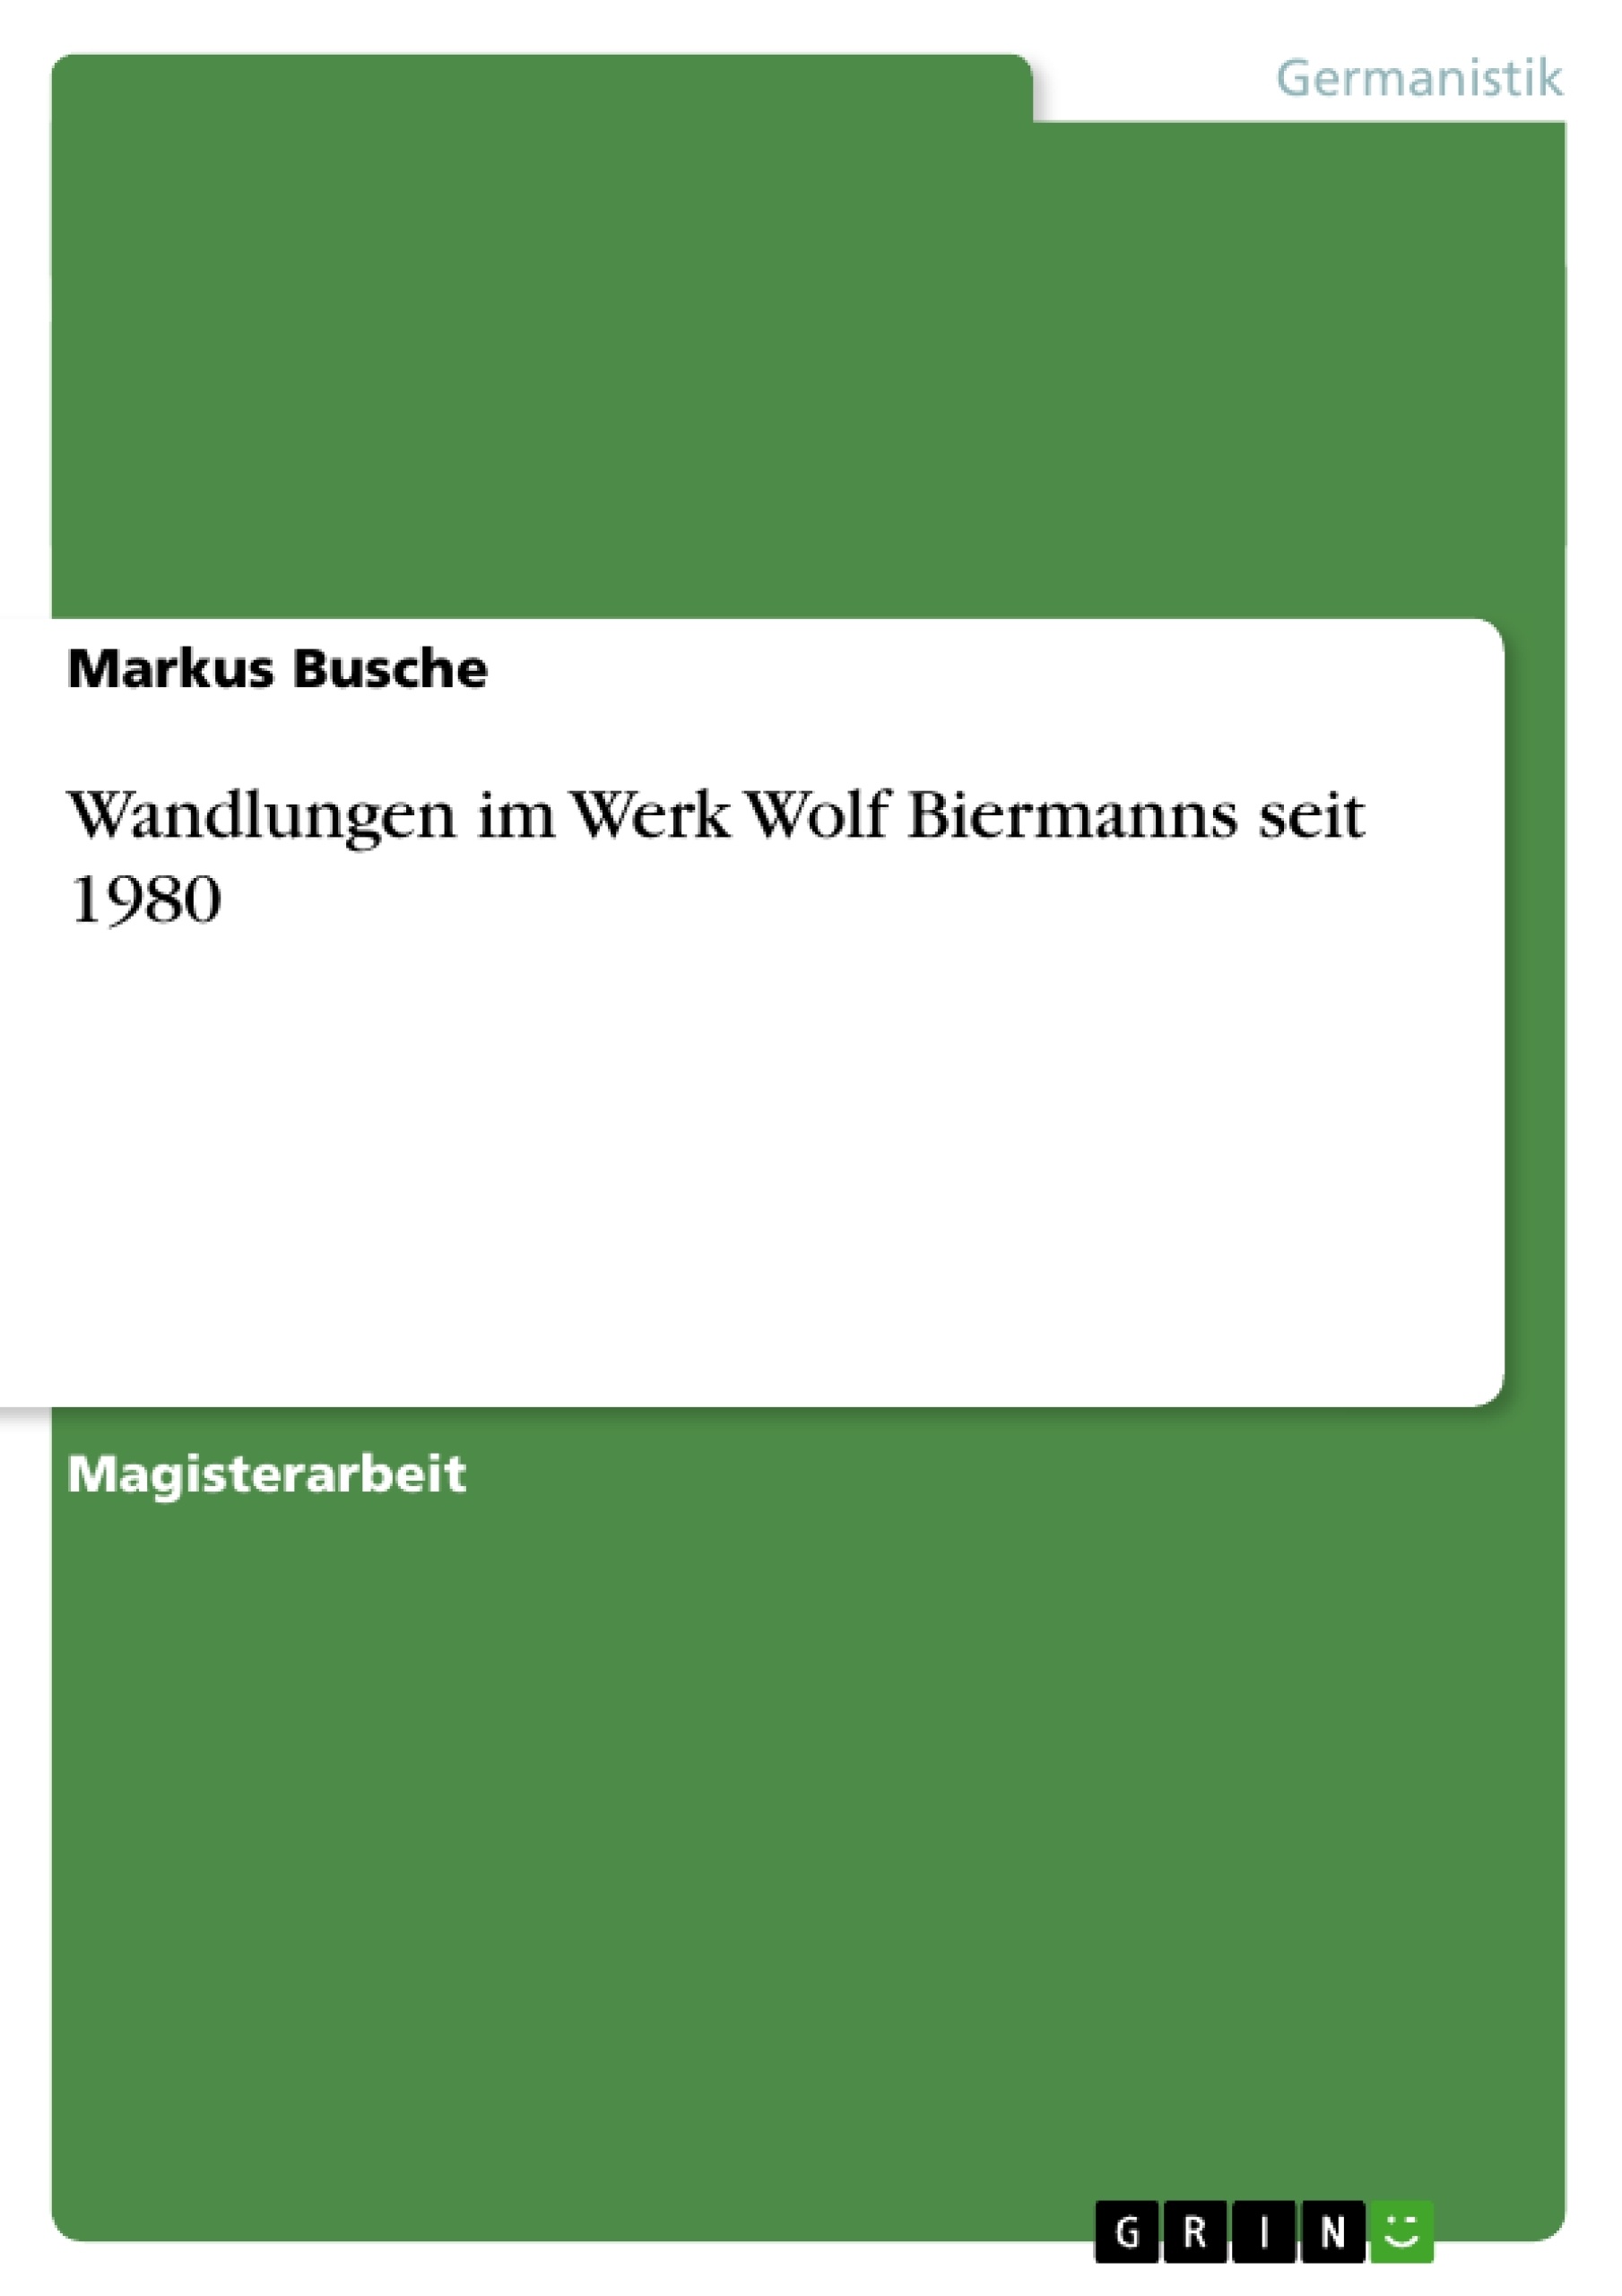 Title: Wandlungen im Werk Wolf Biermanns seit 1980